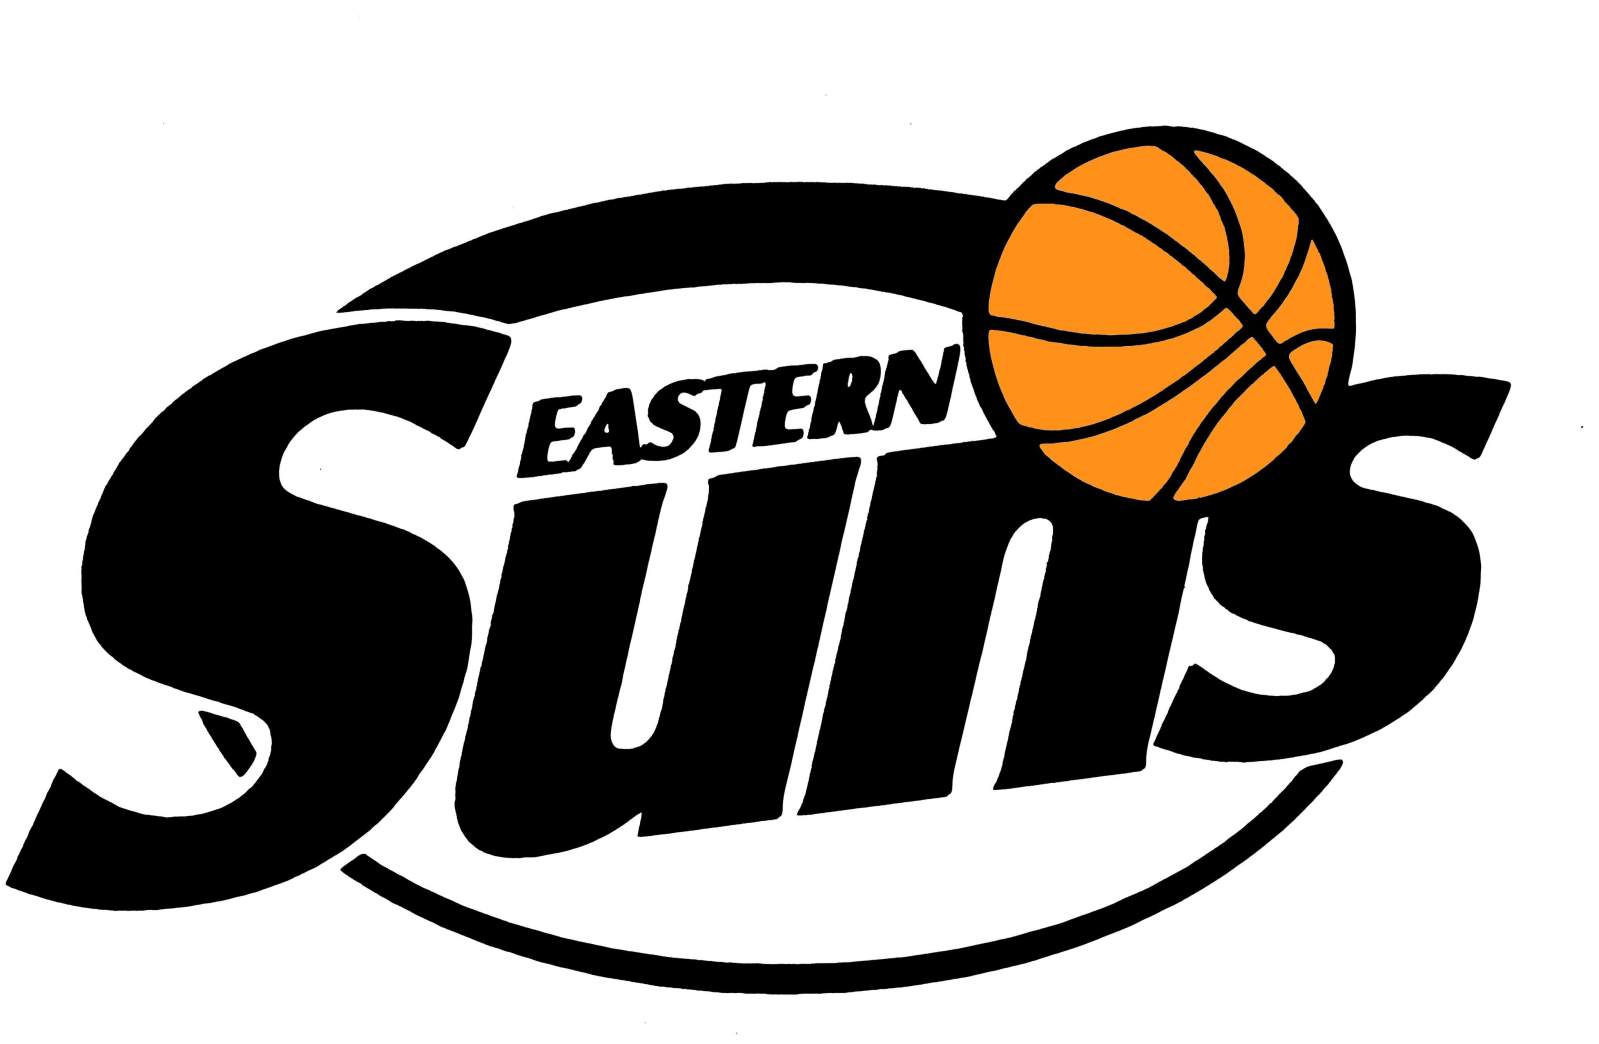 Kalamunda Eastern Suns - WA State Basketball League - FOX SPORTS PULSE